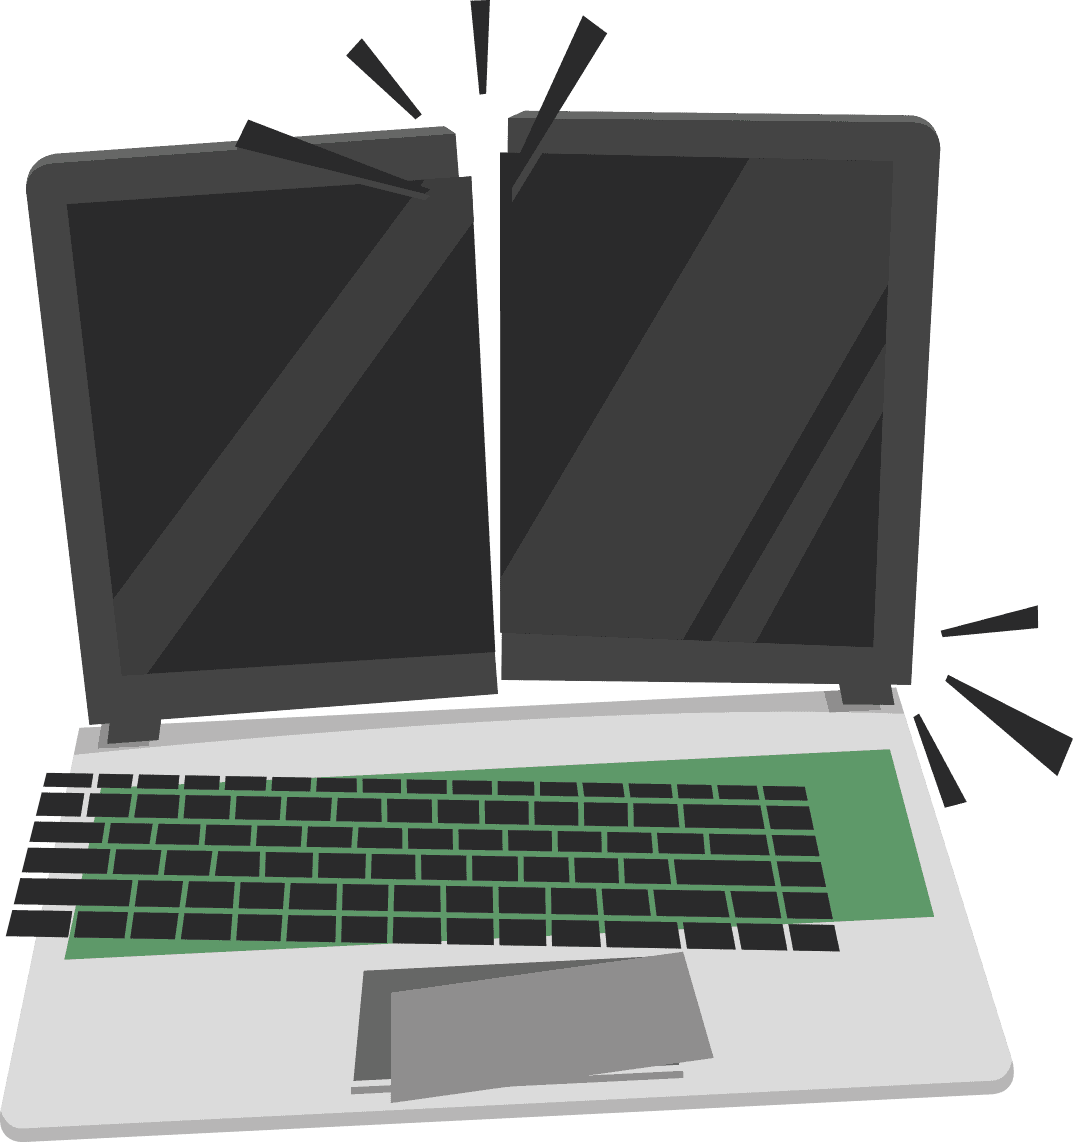 Reparation af laptop skærm